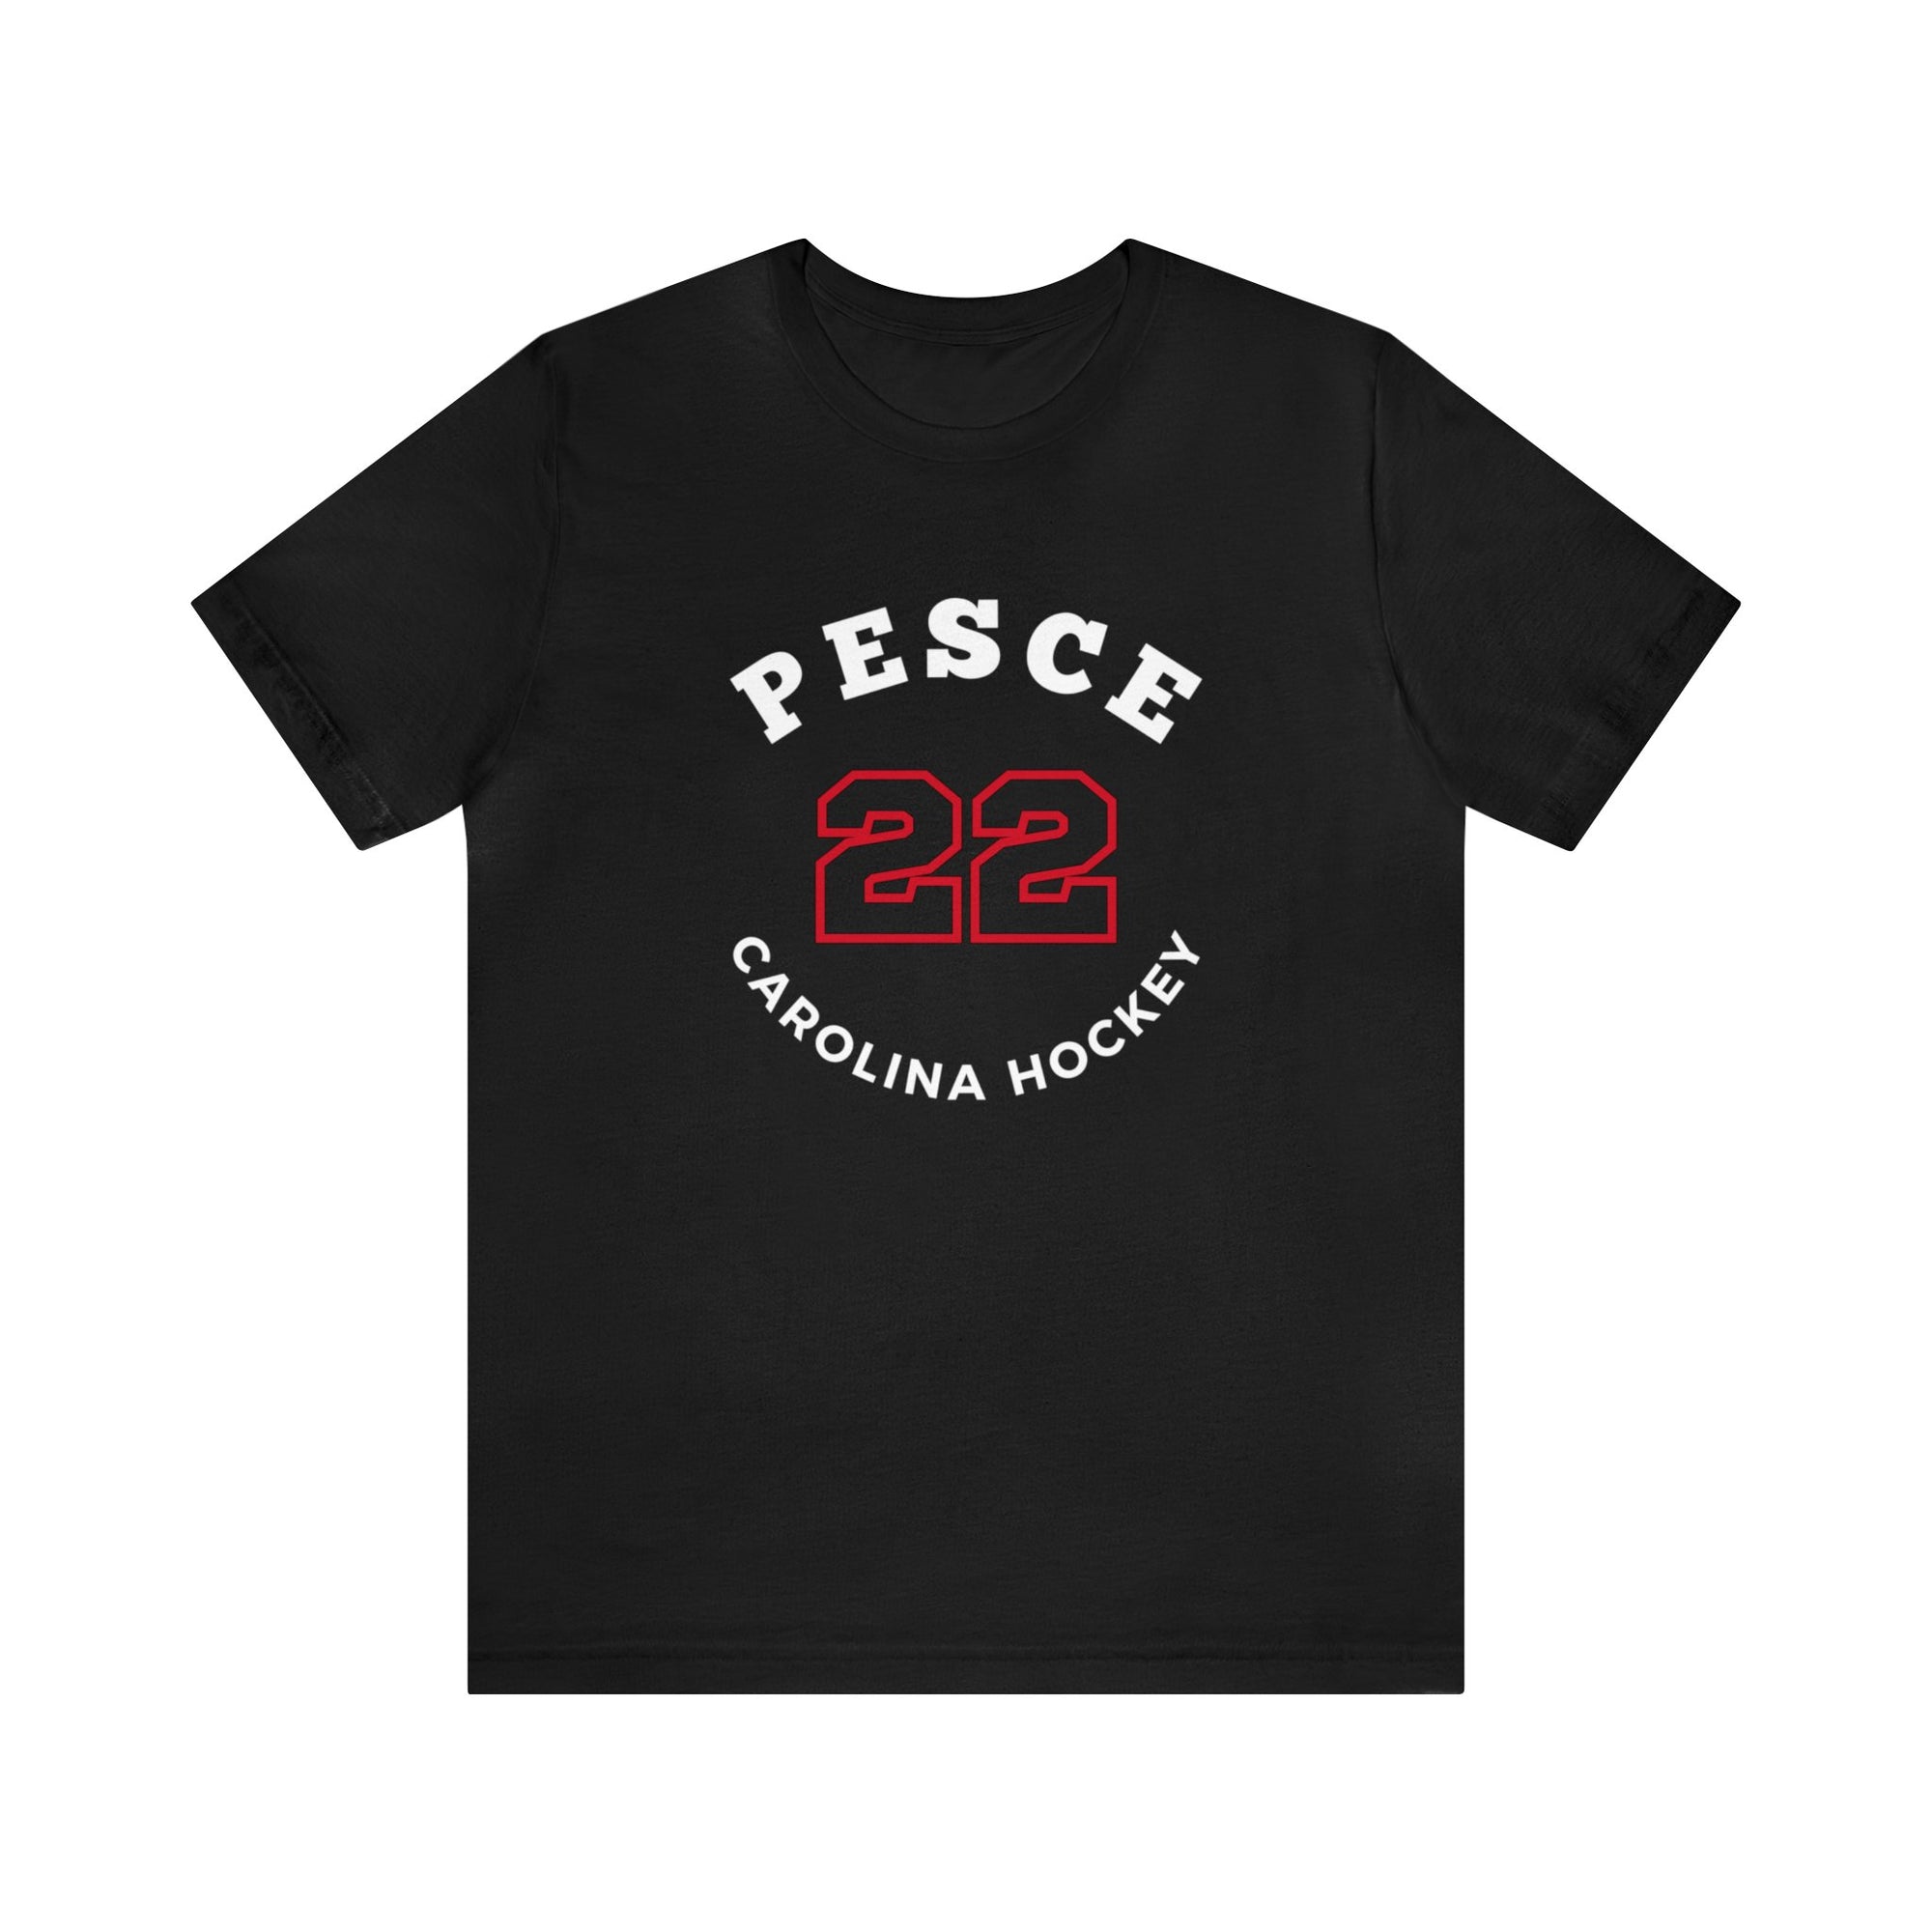 Pesce 22 Carolina Hockey Number Arch Design Unisex T-Shirt